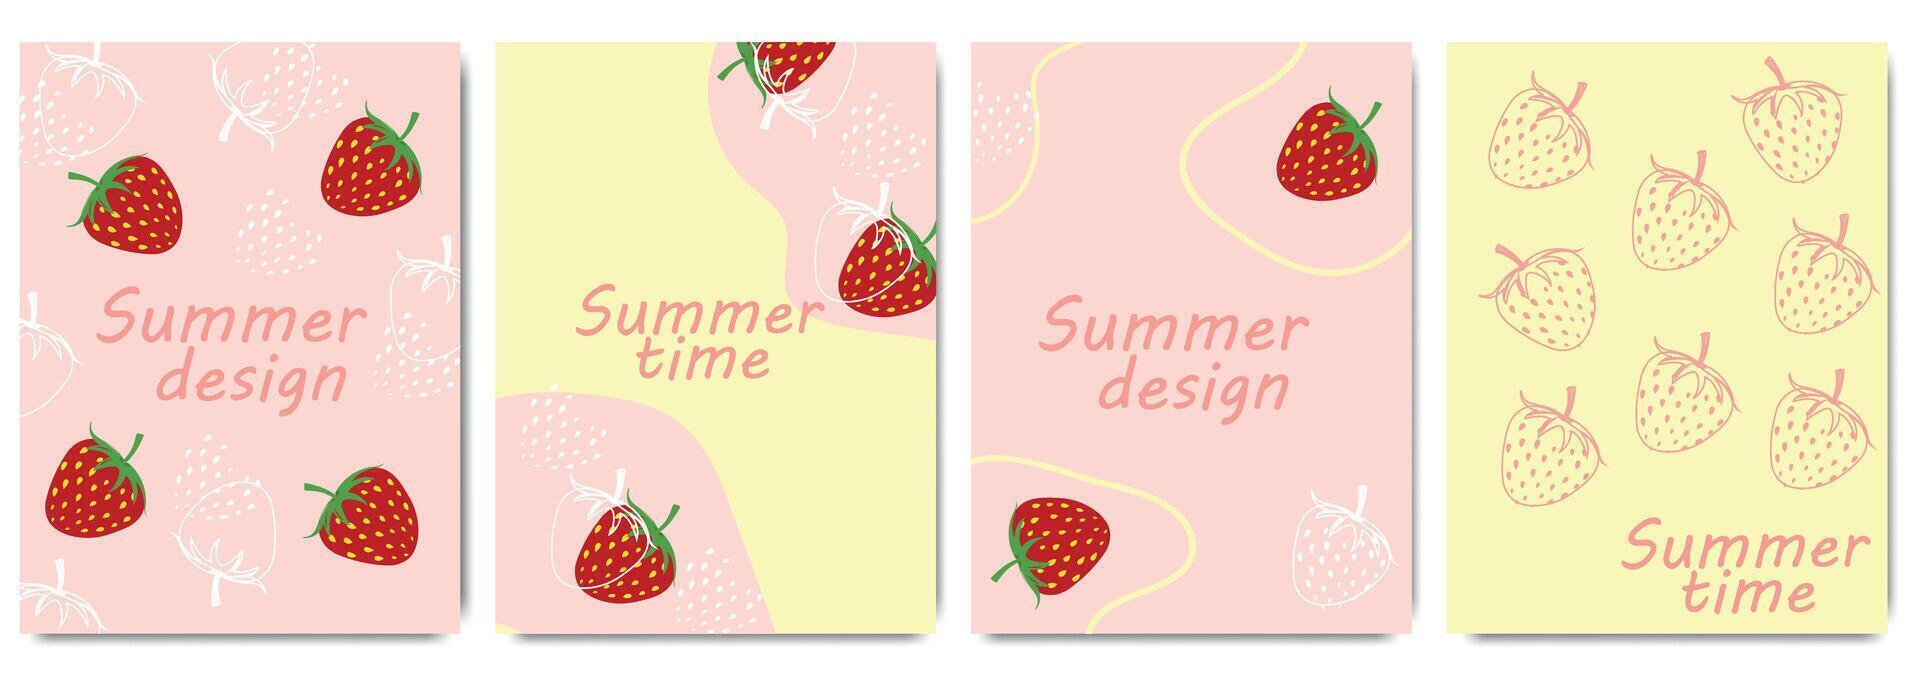 collection de coloré rétro cartes sur le été baie fraise. ligne art conception avec été rouge baie. modèles pour fête, les publicités, l'image de marque, bannière, couverture, étiqueter, affiche vecteur